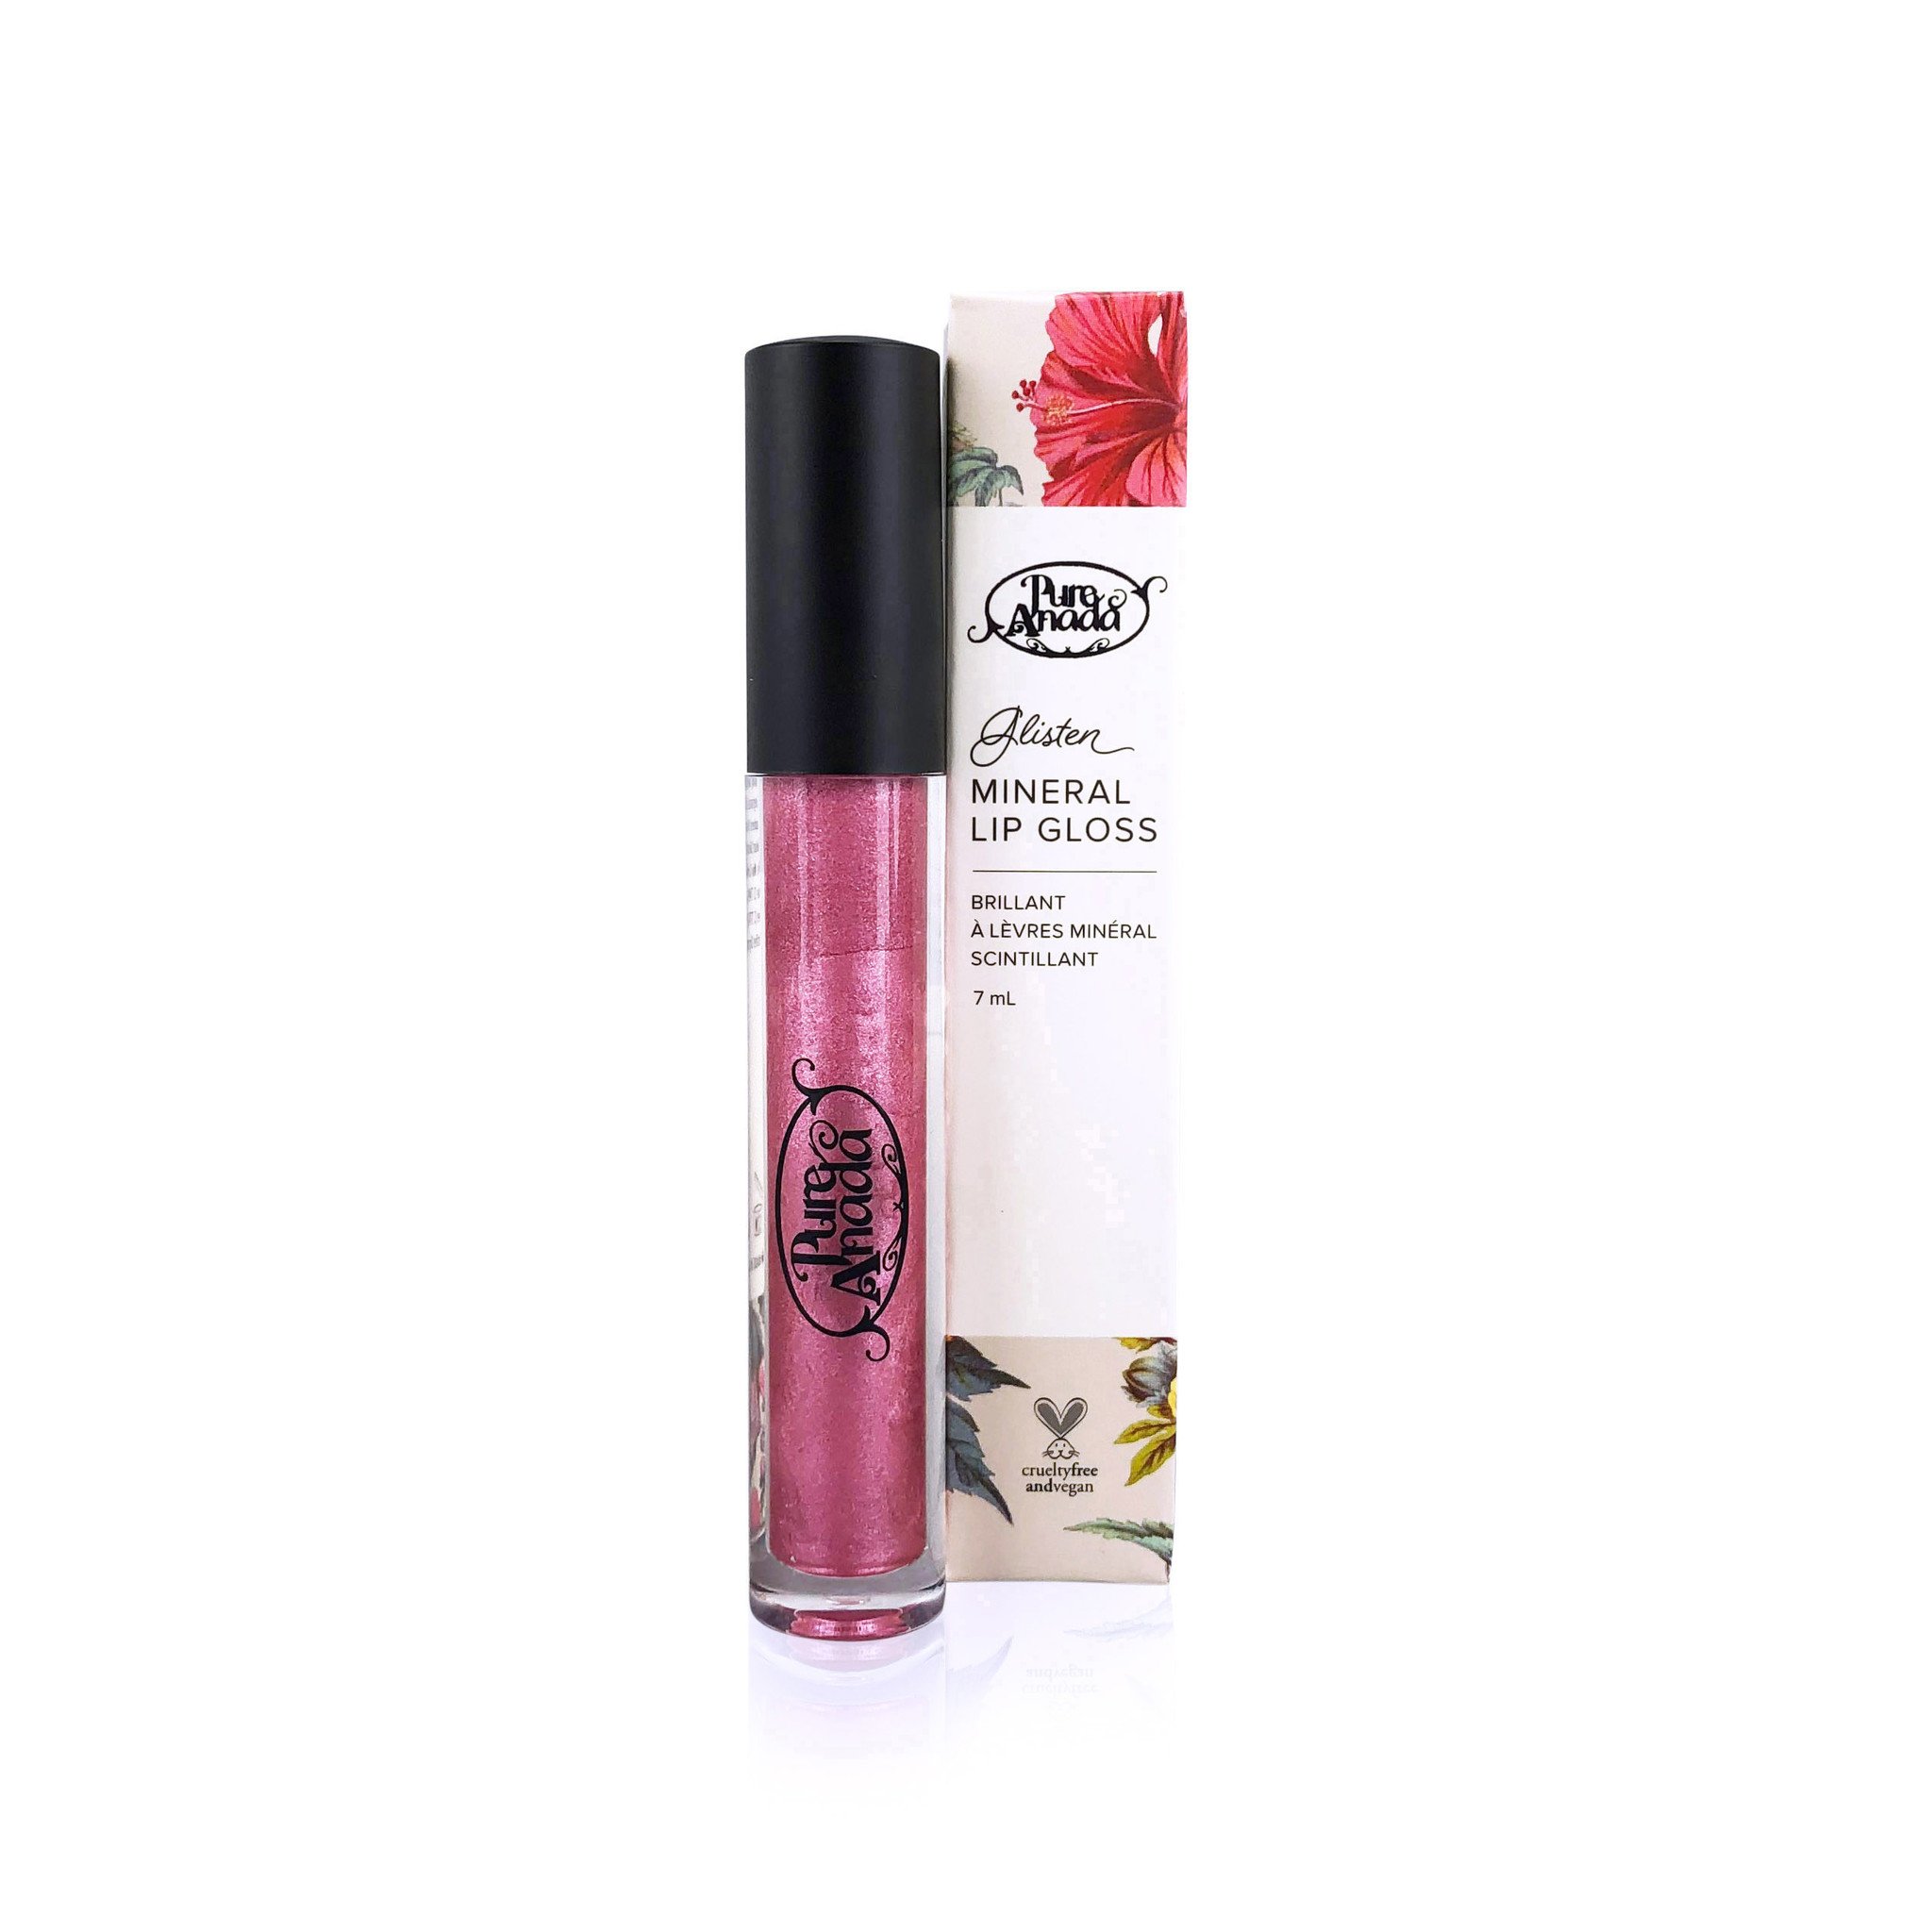 Glisten Mineral Lip Gloss - Pink Quartz-1